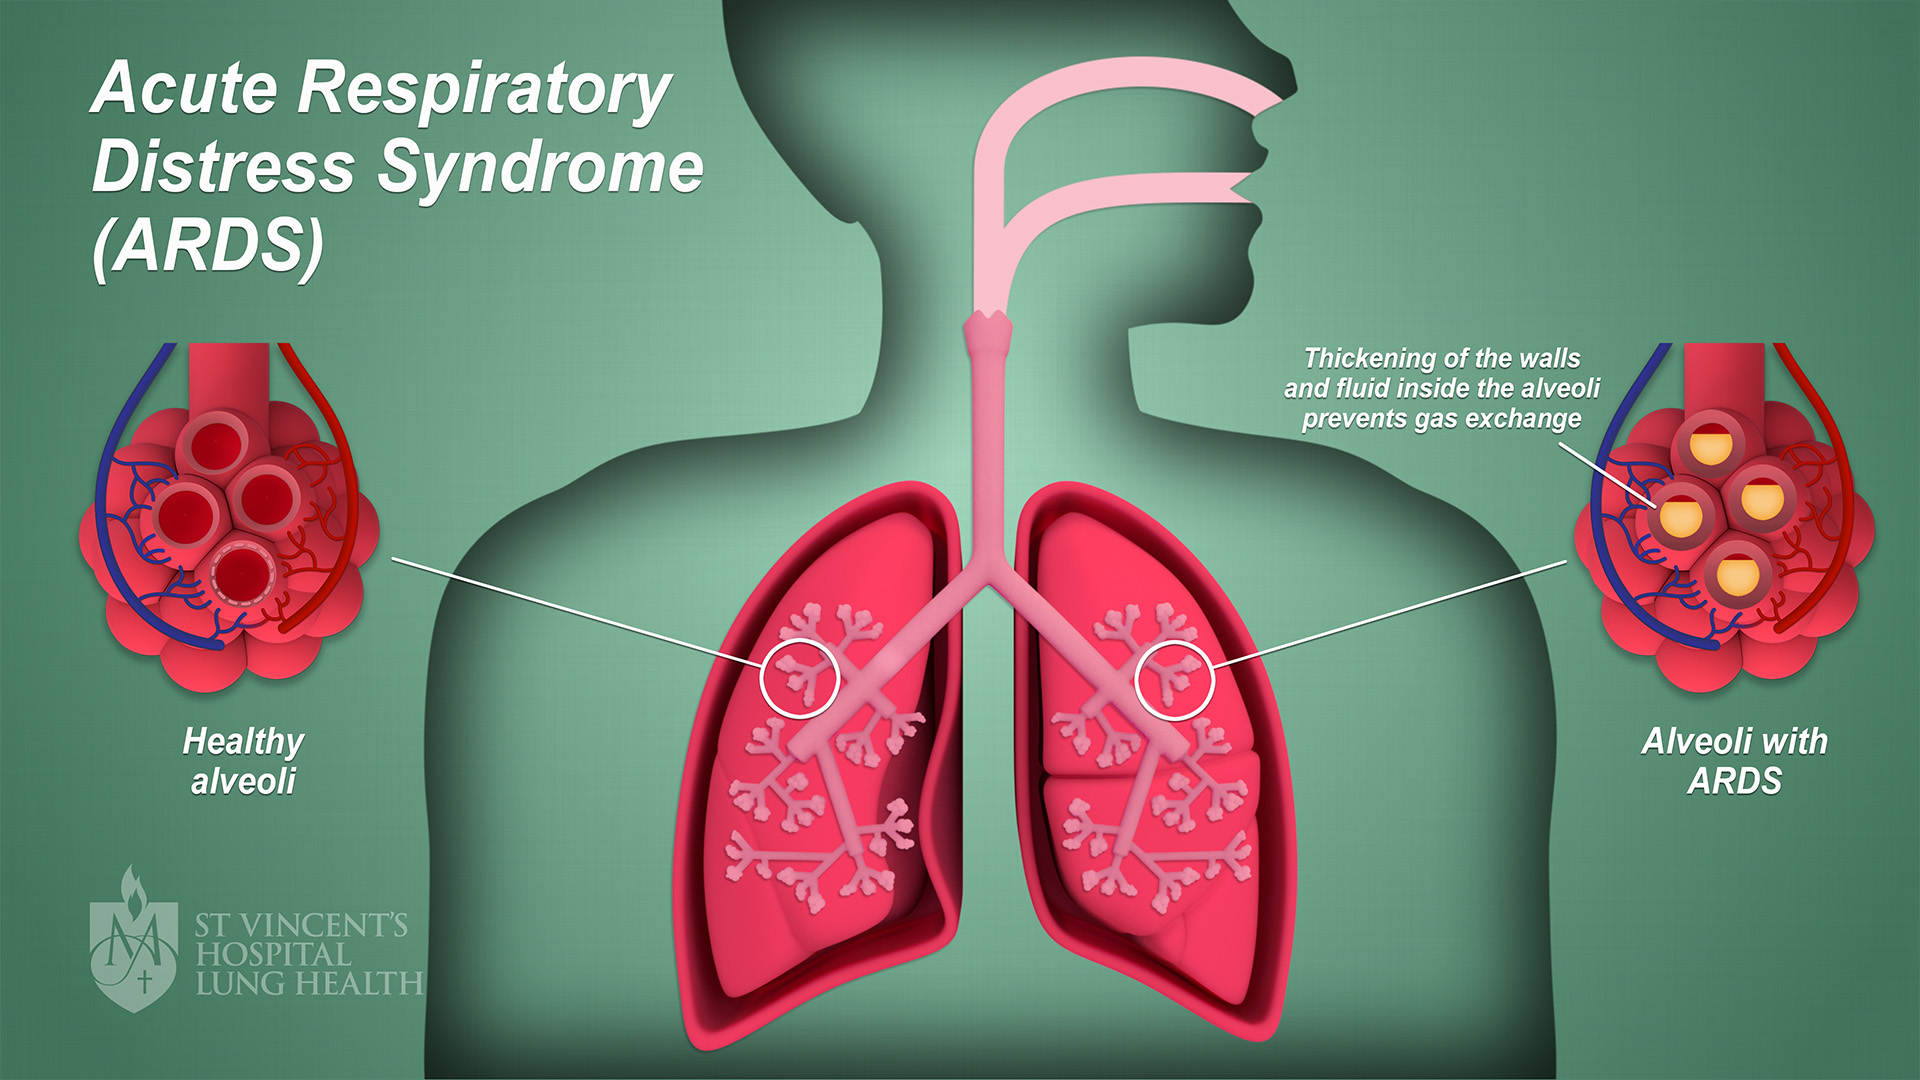 BMJ子刊：肺<font color="red">活检</font>在急性呼吸窘迫综合征诊断中的安全性和可行性分析